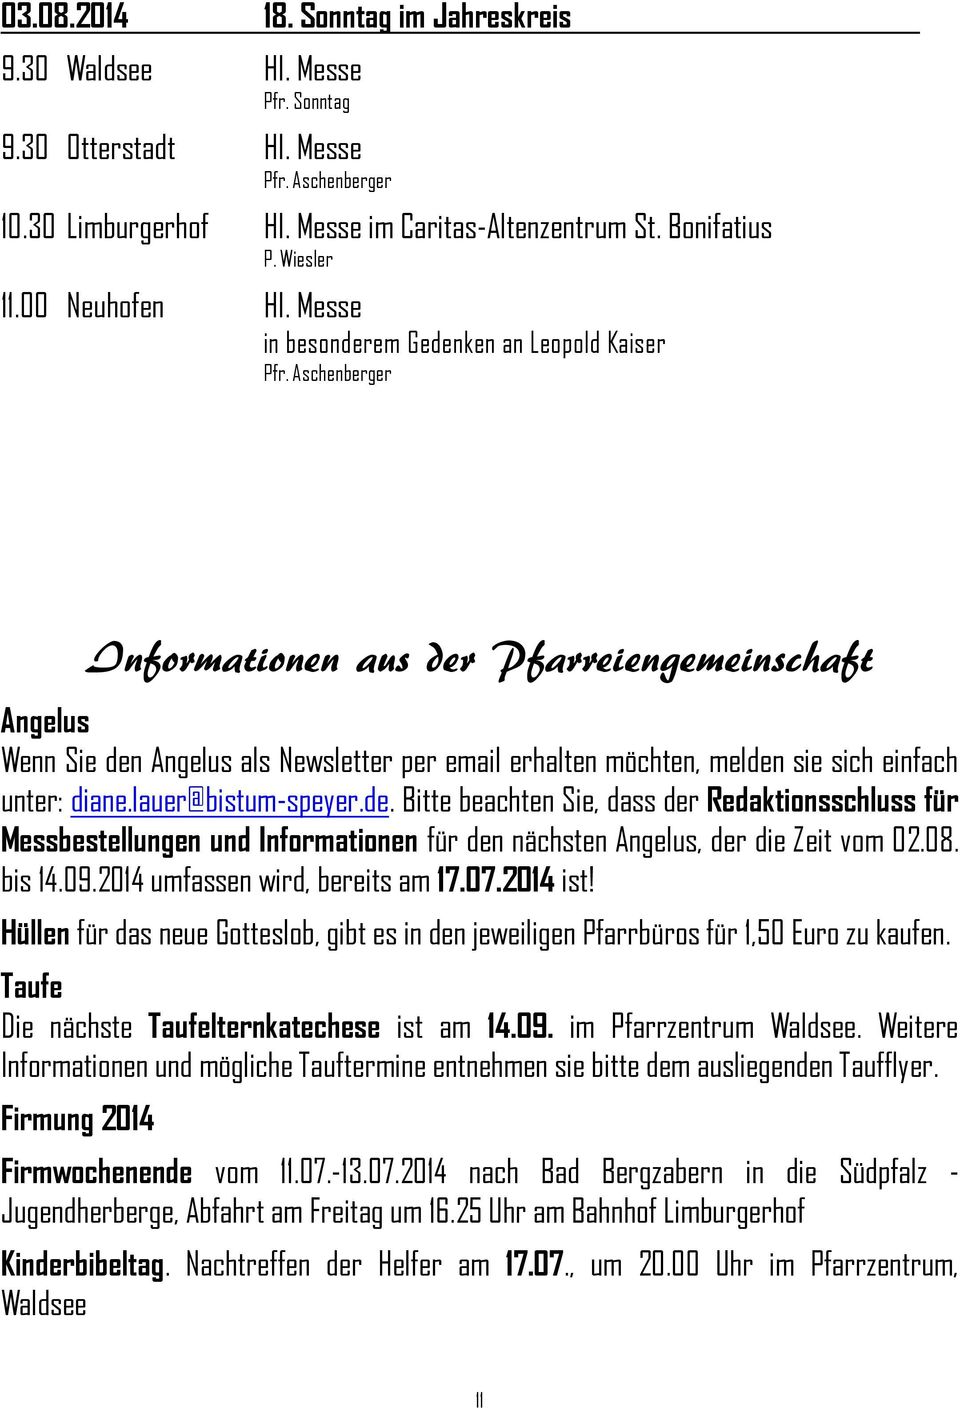 lauer@bistum-speyer.de. Bitte beachten Sie, dass der Redaktionsschluss für Messbestellungen und Informationen für den nächsten Angelus, der die Zeit vom 02.08. bis 14.09.